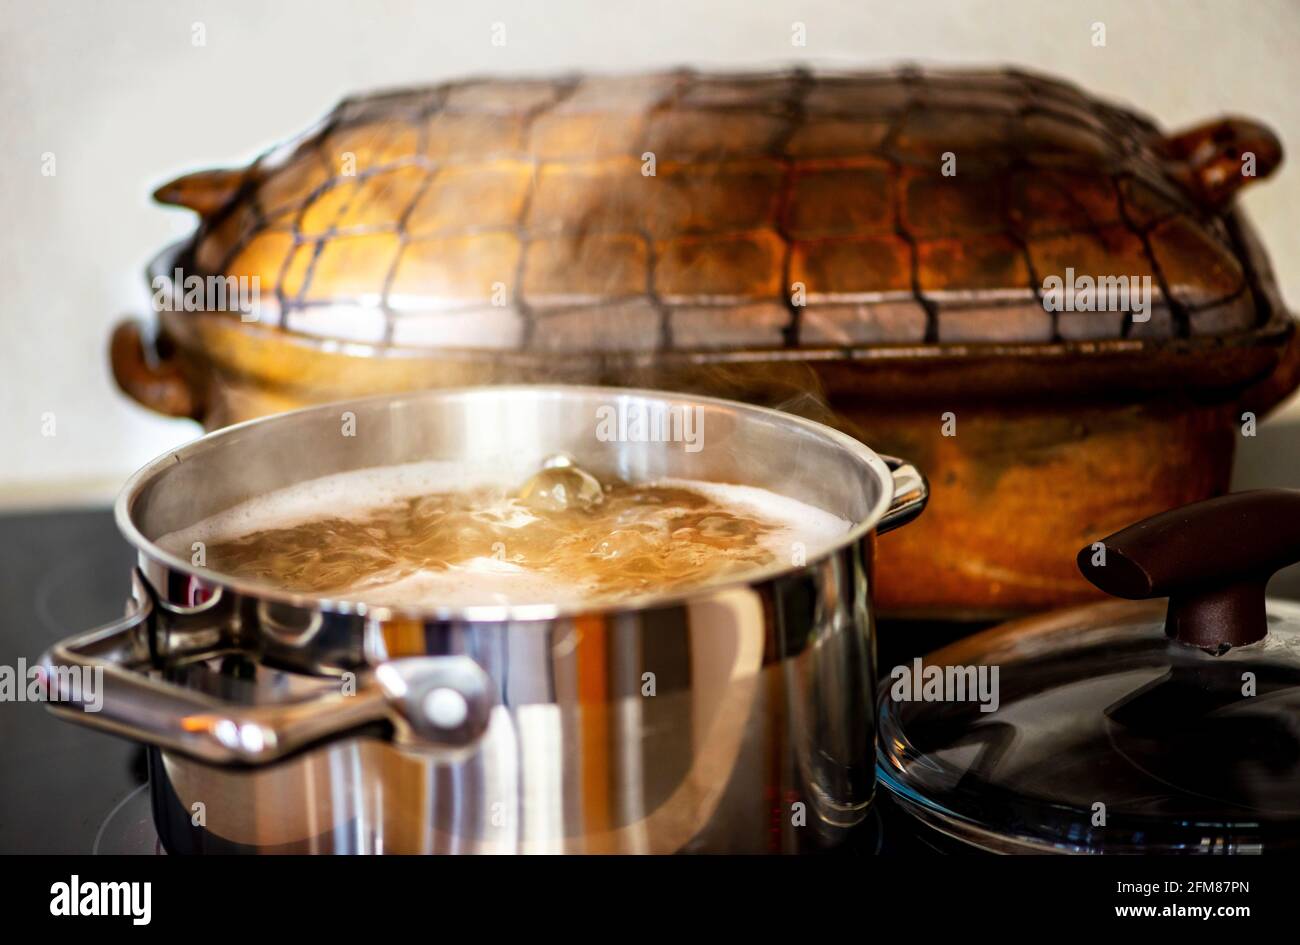 Stahltopf mit kochender sprudelnder Flüssigkeit (Brühe) und aufsteigendem Dampf auf heissem Keramikherd, dahinter alte rustikale Steingutpfanne, Deckel rechts. Stockfoto